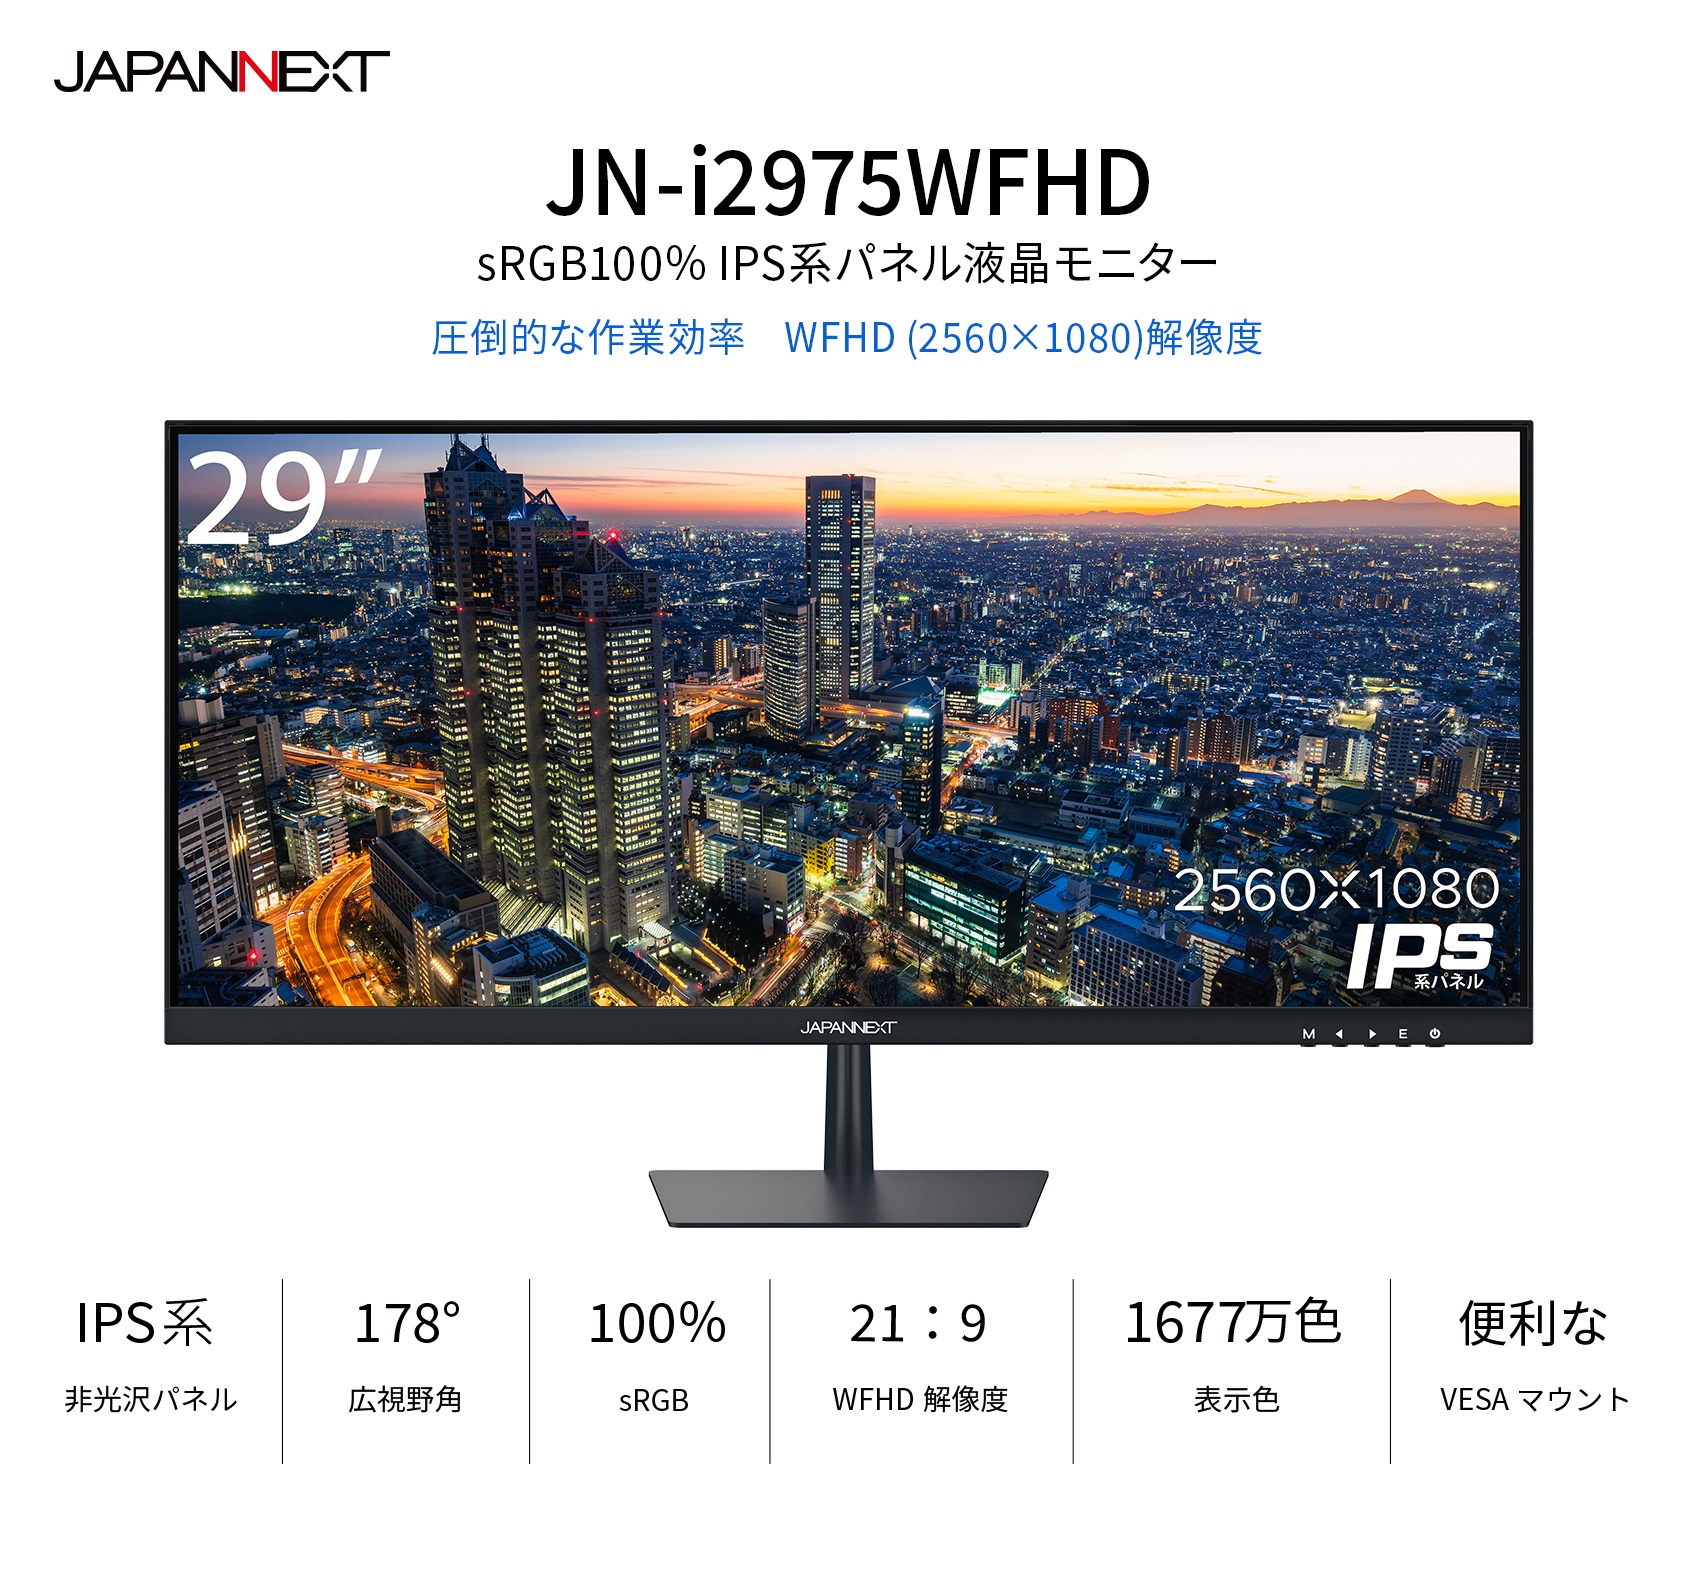 JAPANNEXT 29インチ ワイドFHD(2560 X 1080) 液晶モニター JN